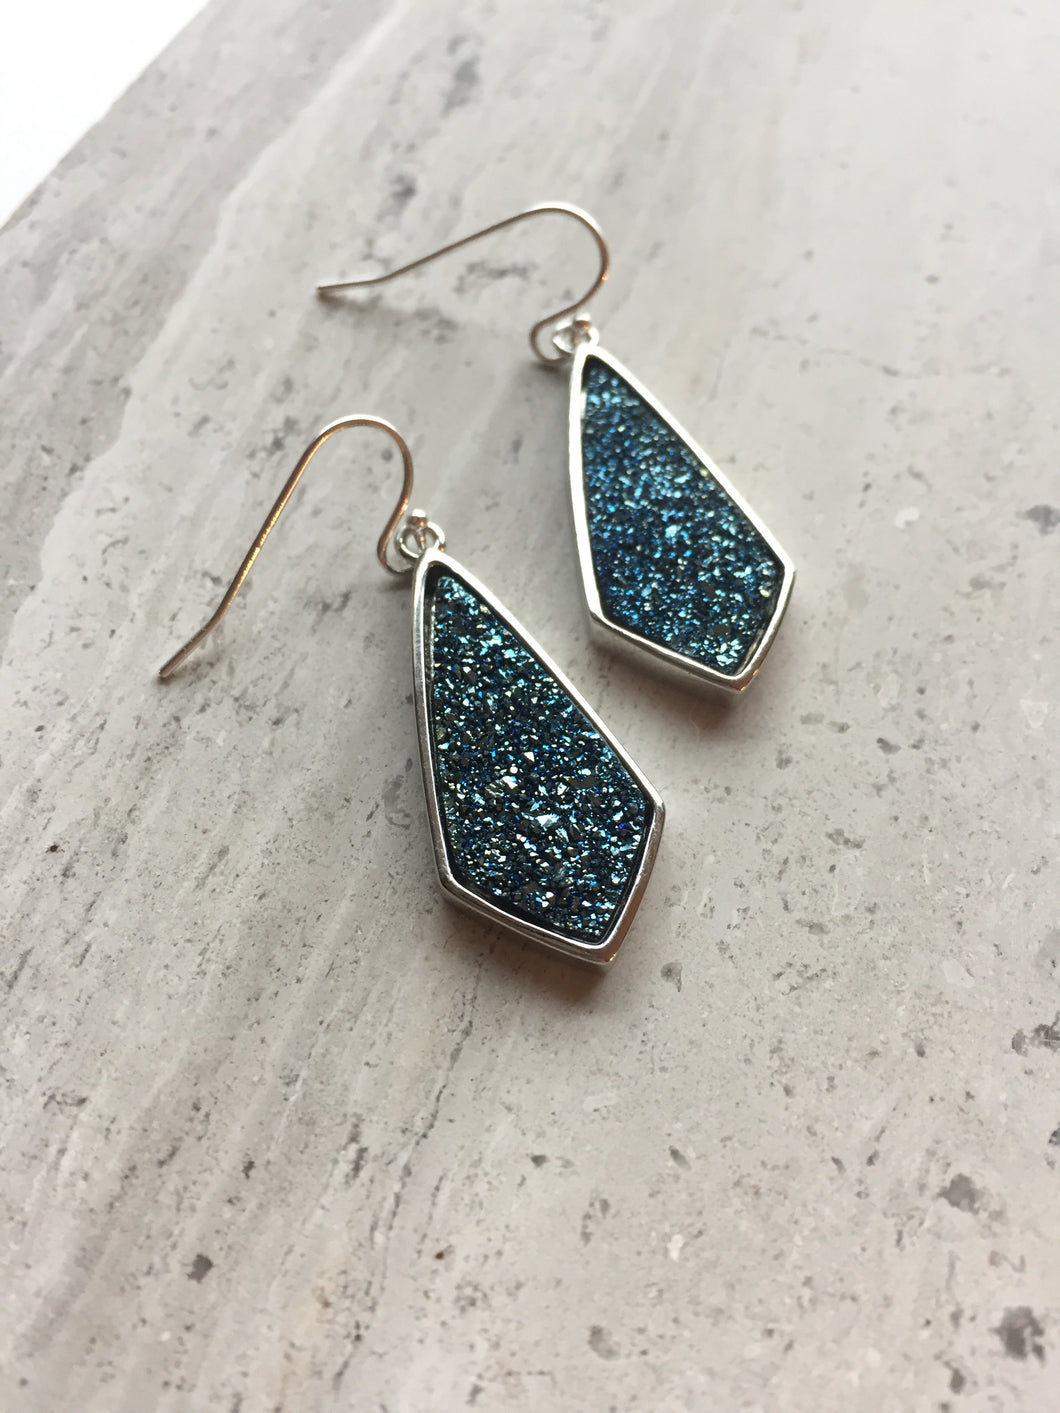 Midnight Blue Druzy Earrings, silver